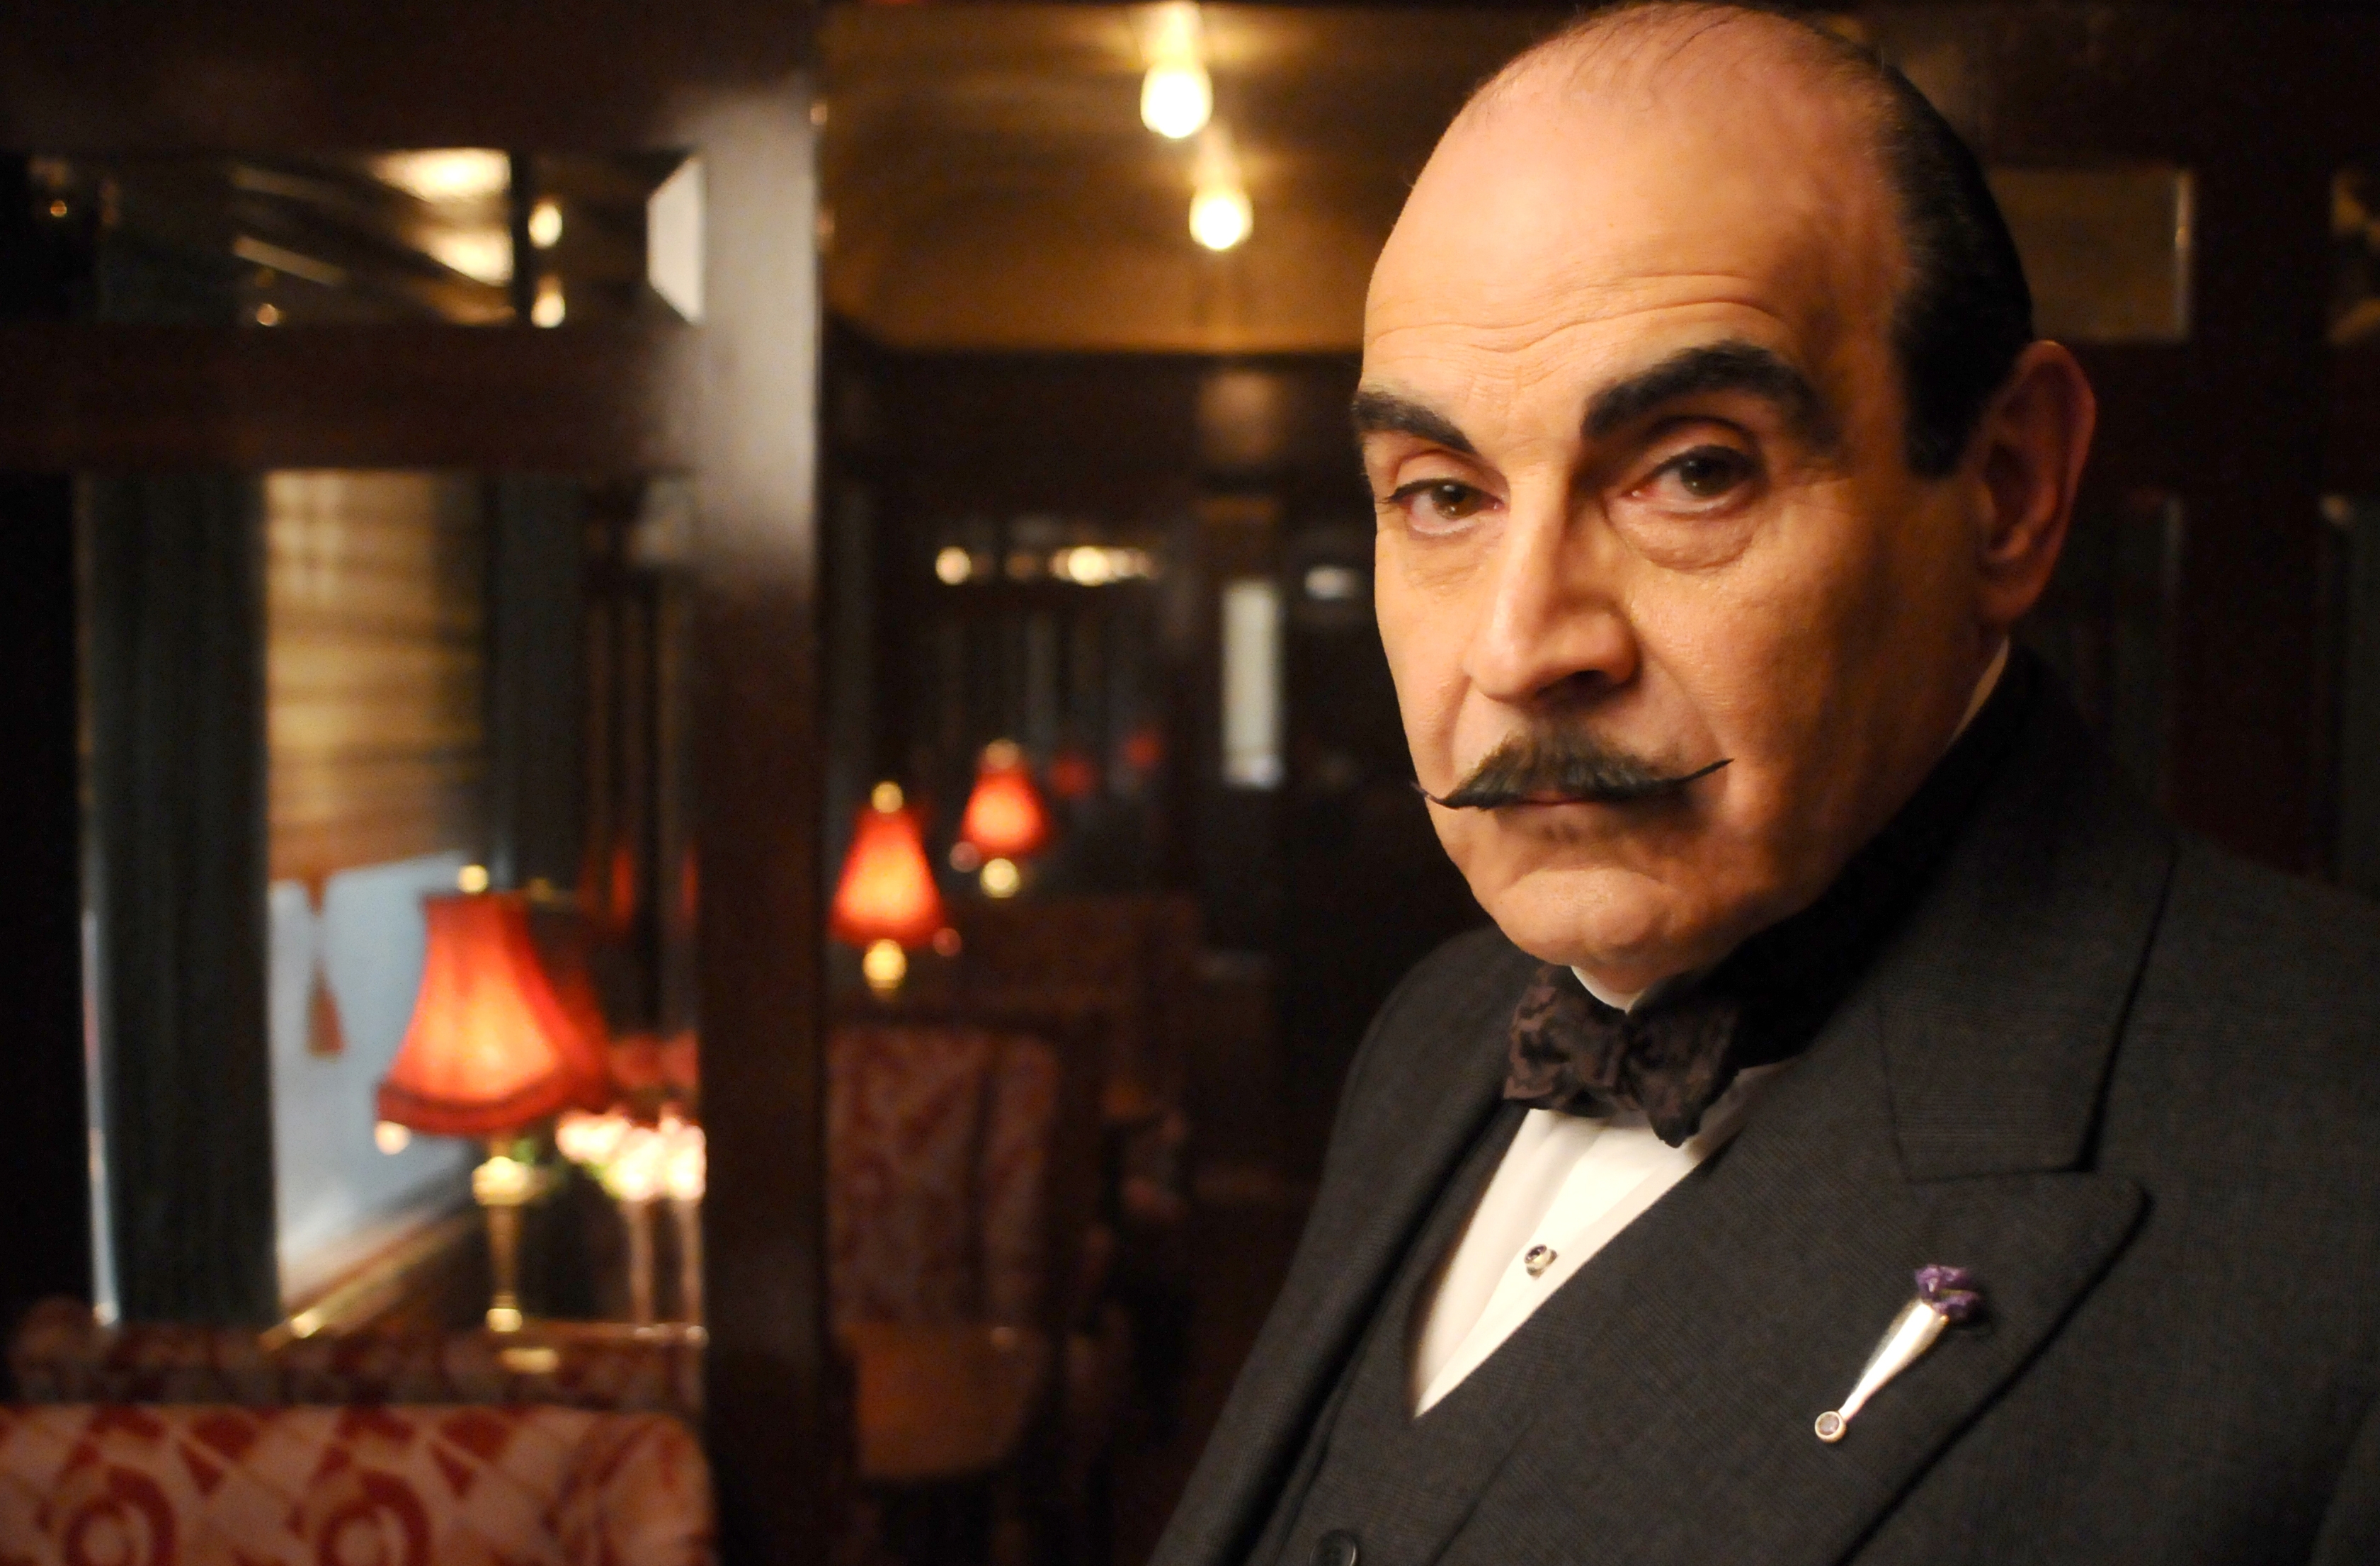 Hercule Poirot Backgrounds, Compatible - PC, Mobile, Gadgets| 3361x2211 px